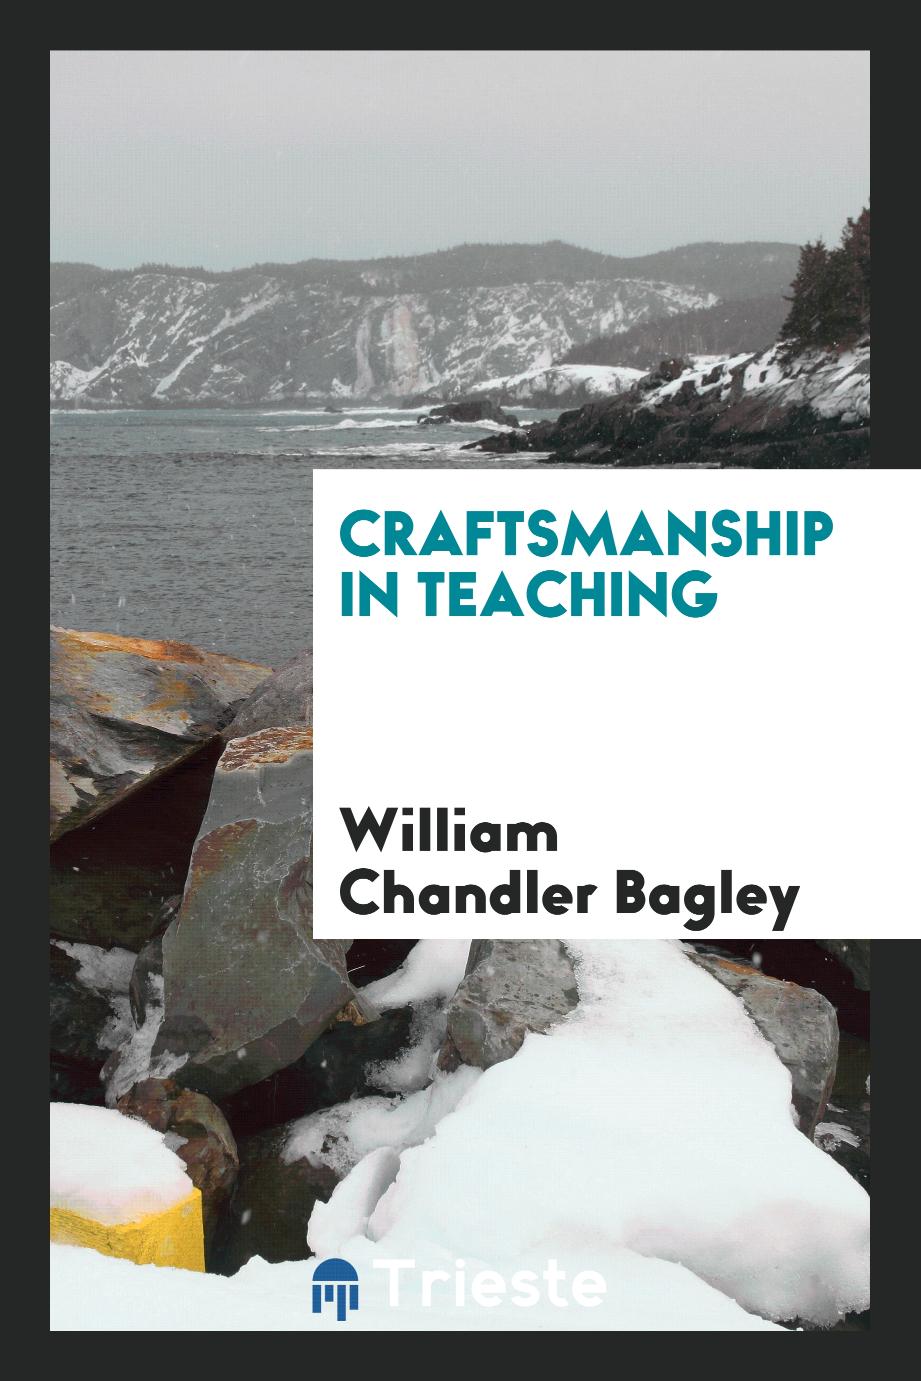 Craftsmanship in teaching